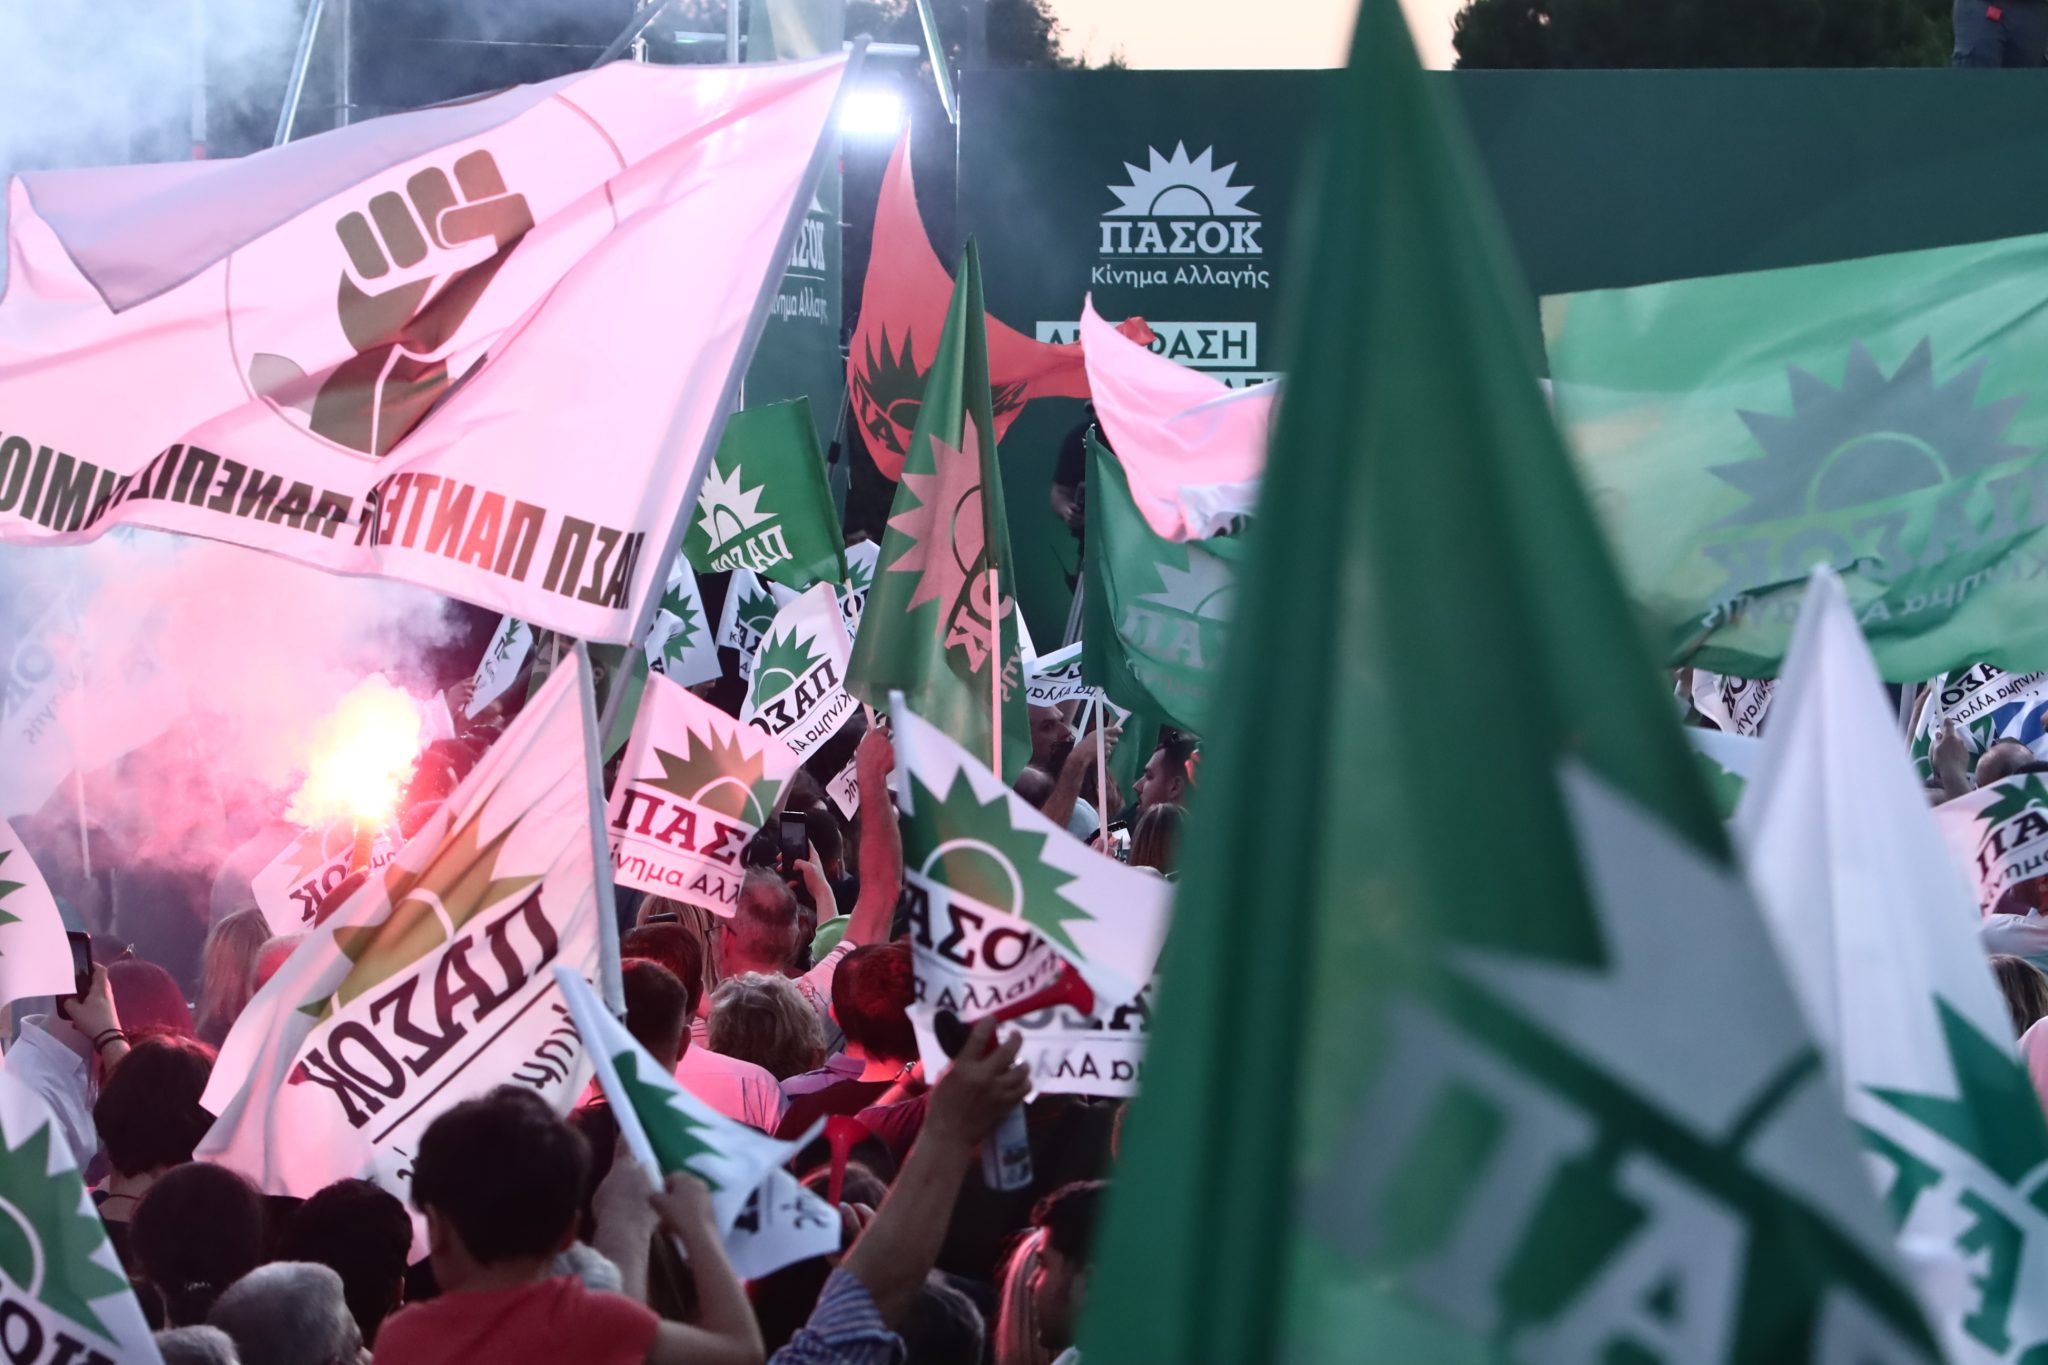 Μεγάλη άνοδος του ΠΑΣΟΚ στην περιφέρεια – Σε ποιούς νομούς βγήκε δεύτερο κόμμα